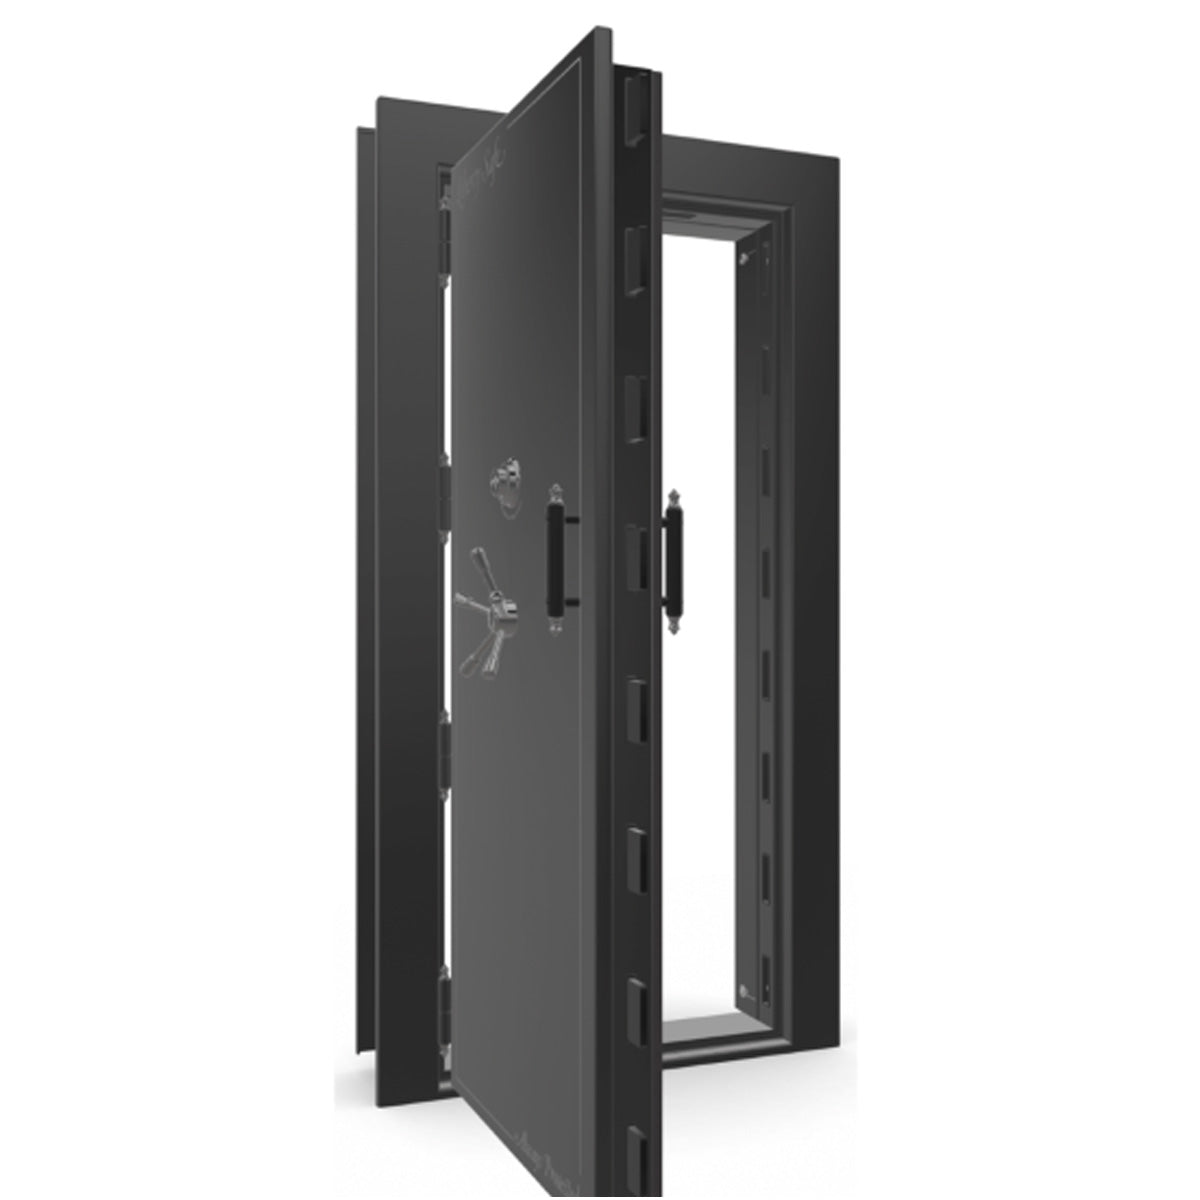 The Beast Vault Door in Black Gloss with Black Chrome Electronic Lock, Left Outswing, door open.